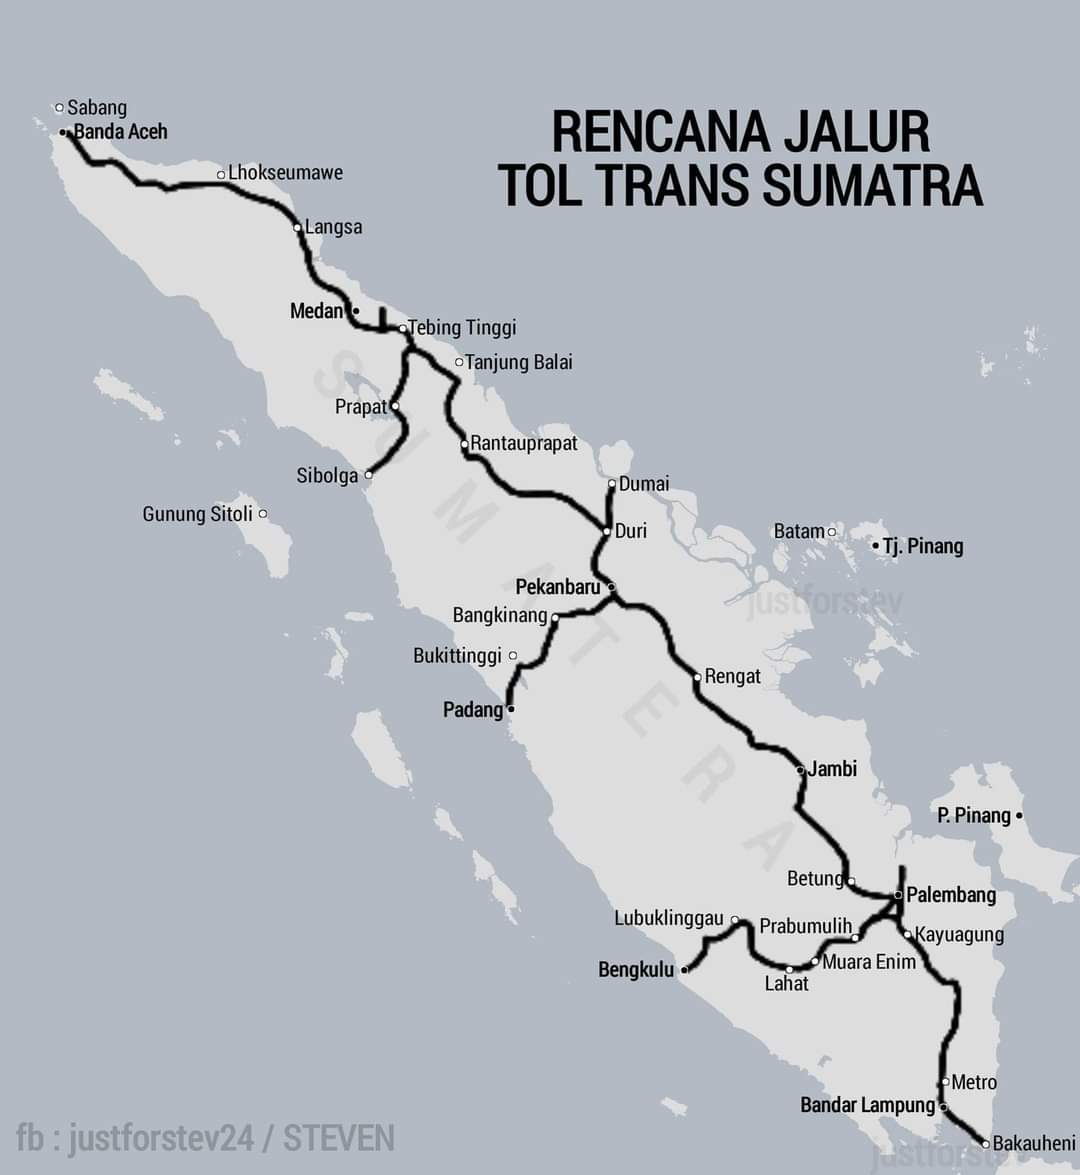 🇮🇩 | Rencana Jalur Tol Trans Sumatra. Jalan Tol Trans Sumatra dg panjang keseluruhan 2.074 km yg akan menghubungkan pintu gerbang sumatra yaitu Bakauheni Lampung sampai ke Banda Aceh. kalo ada jembatan di selat sunda enak langsung ke jawa